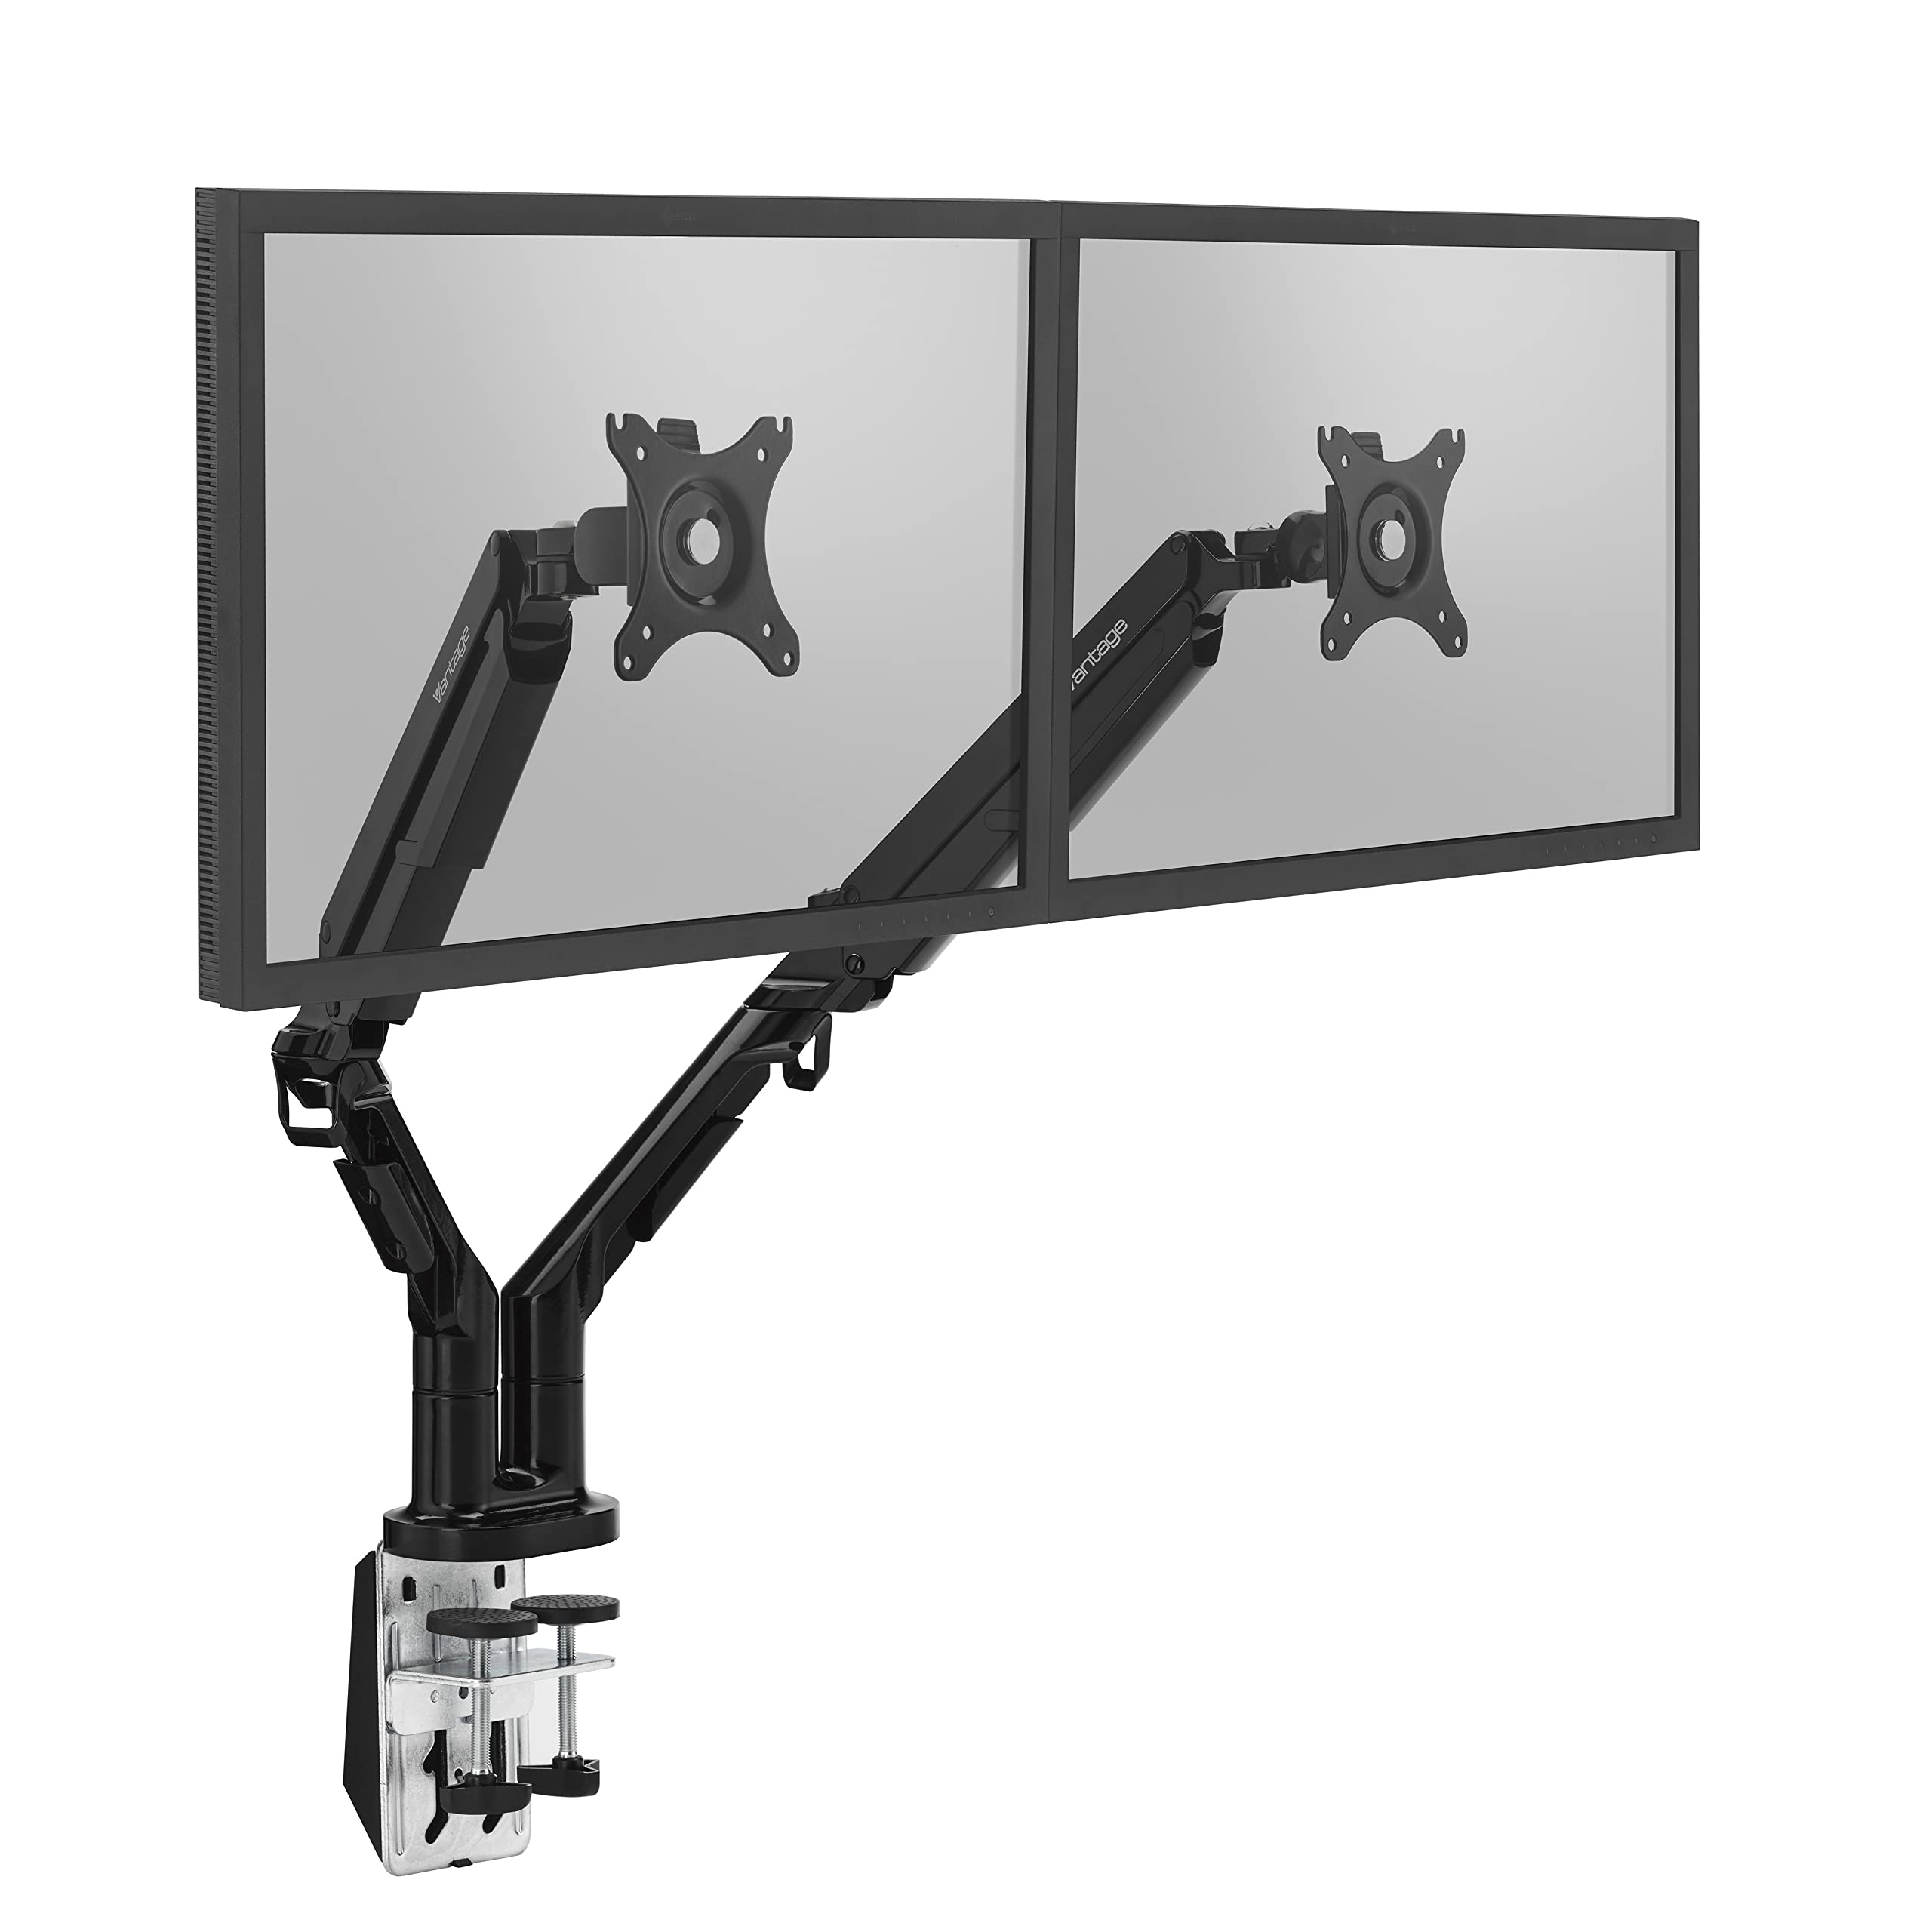 Vantage Premium Duo Monitor Halterung (VESA 75 & 100, 2X 2-9 kg, für 17-32 Zoll Bildschirme, mit Gasdruckfeder, drehbar, neigbar, schwenkbar) schwarz